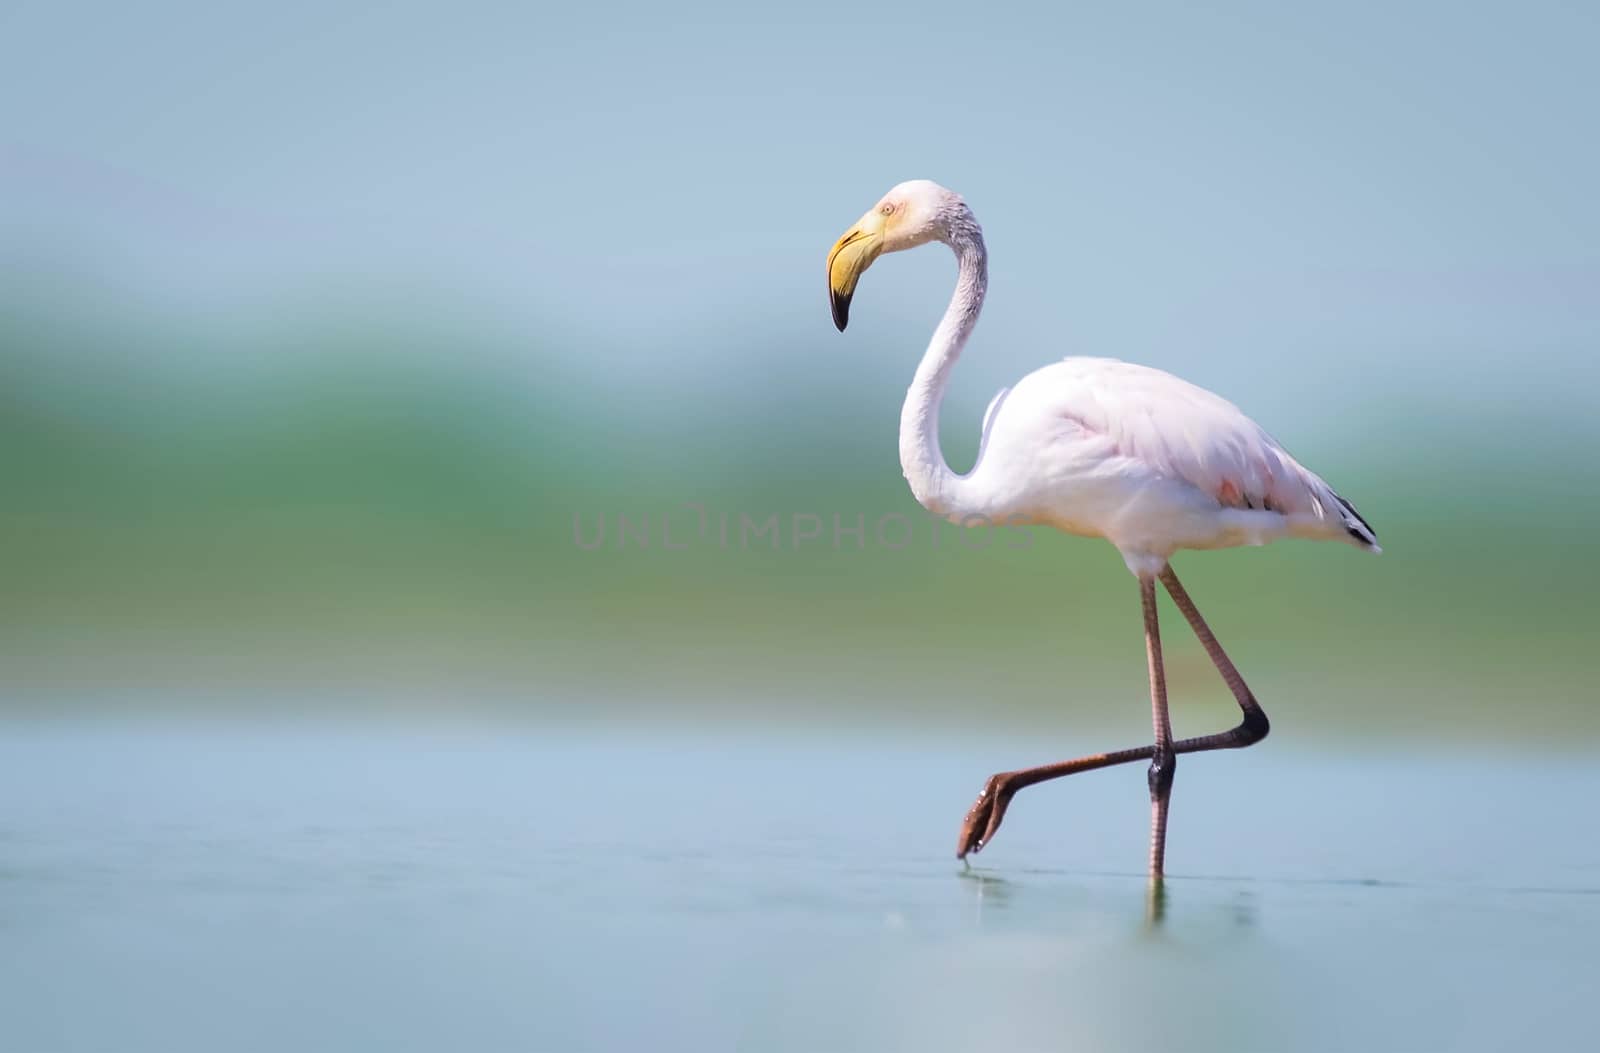 Greater flamingo walking alone in lake by rkbalaji